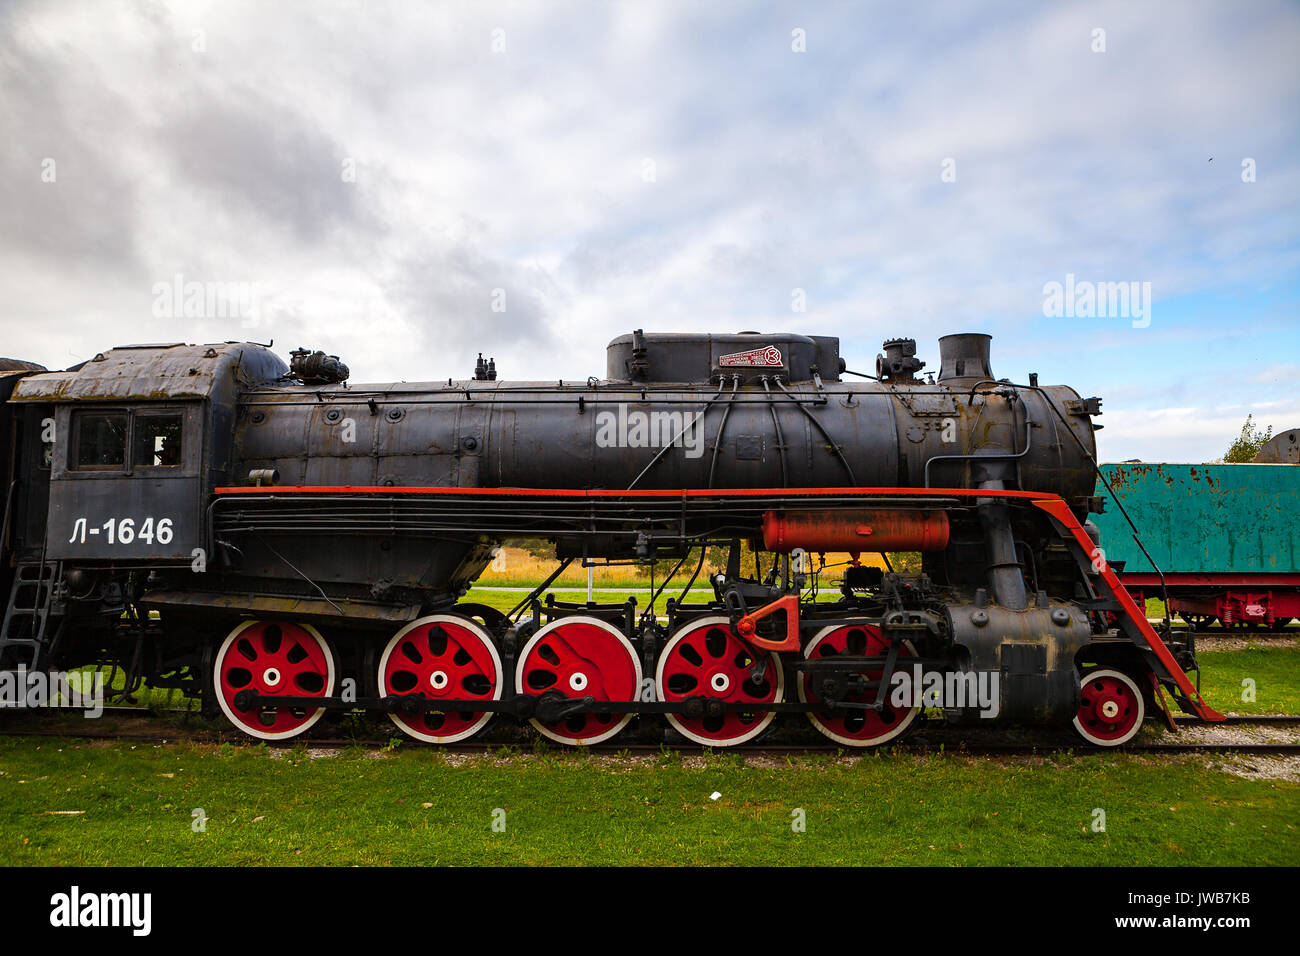 HAAPSALU, ESTONIA - 01 OKT 2016. Retro steam cocomotive at the Haapsalu railway station Stock Photo